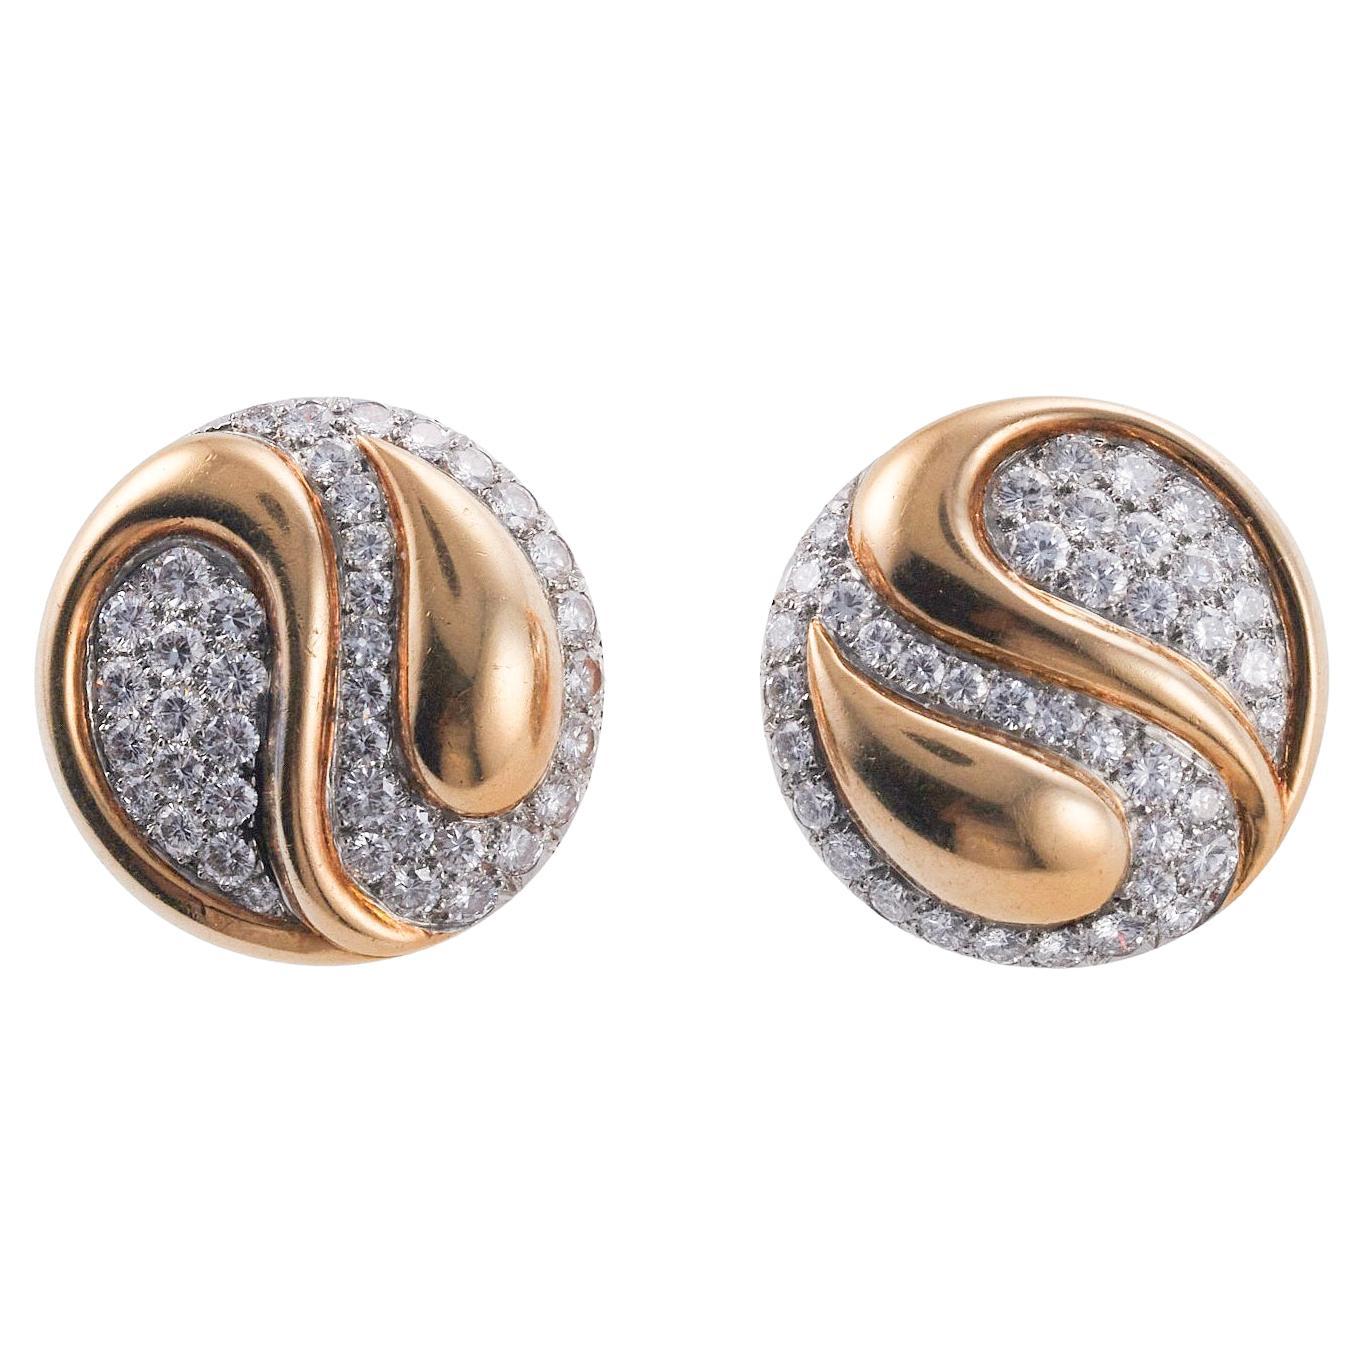 Shop Jewellery Online - ULa Certified Diamond Earrings In Hallmarked Gold